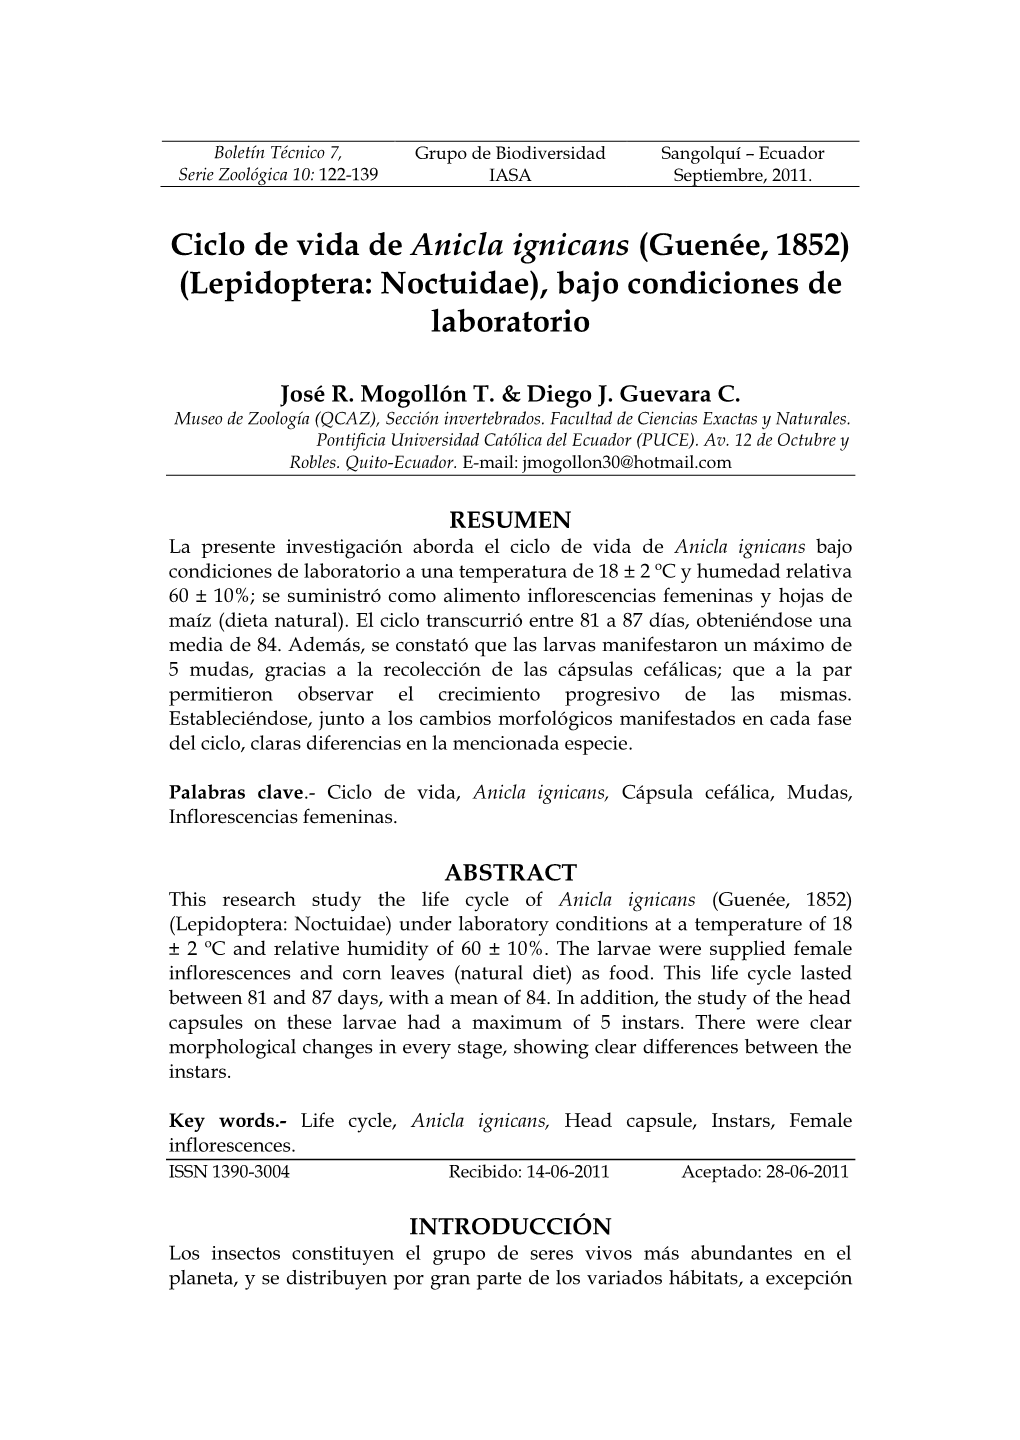 Ciclo De Vida De Anicla Ignicans (Guenée, 1852) (Lepidoptera: Noctuidae), Bajo Condiciones De Laboratorio